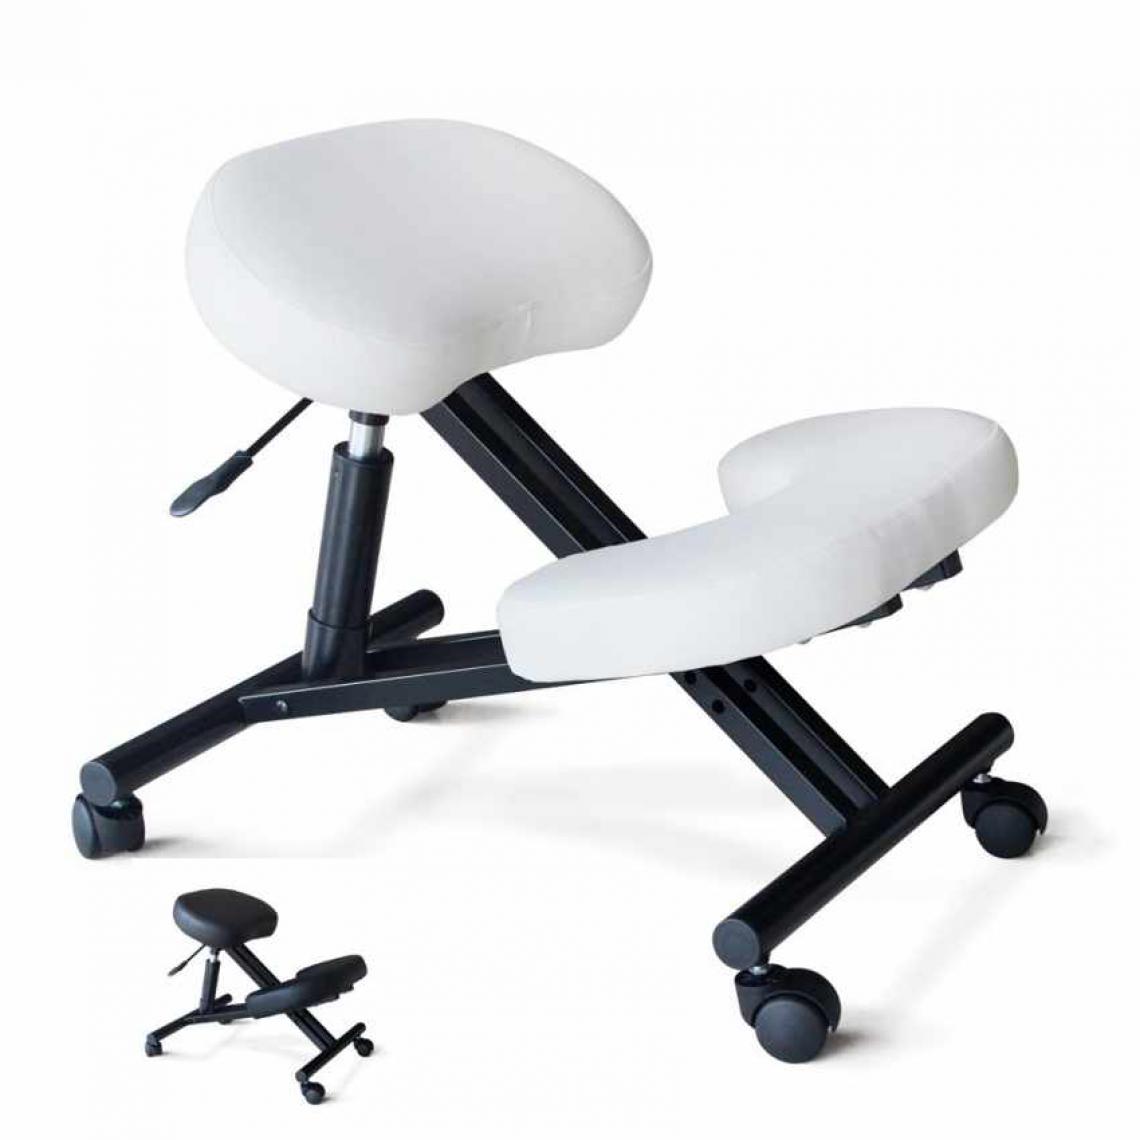 Bodyline - Healt And Massage - Chaise orthopédique suédoise en métal siège ergonomique Balancesteel, Couleur: Blanc - Chaises